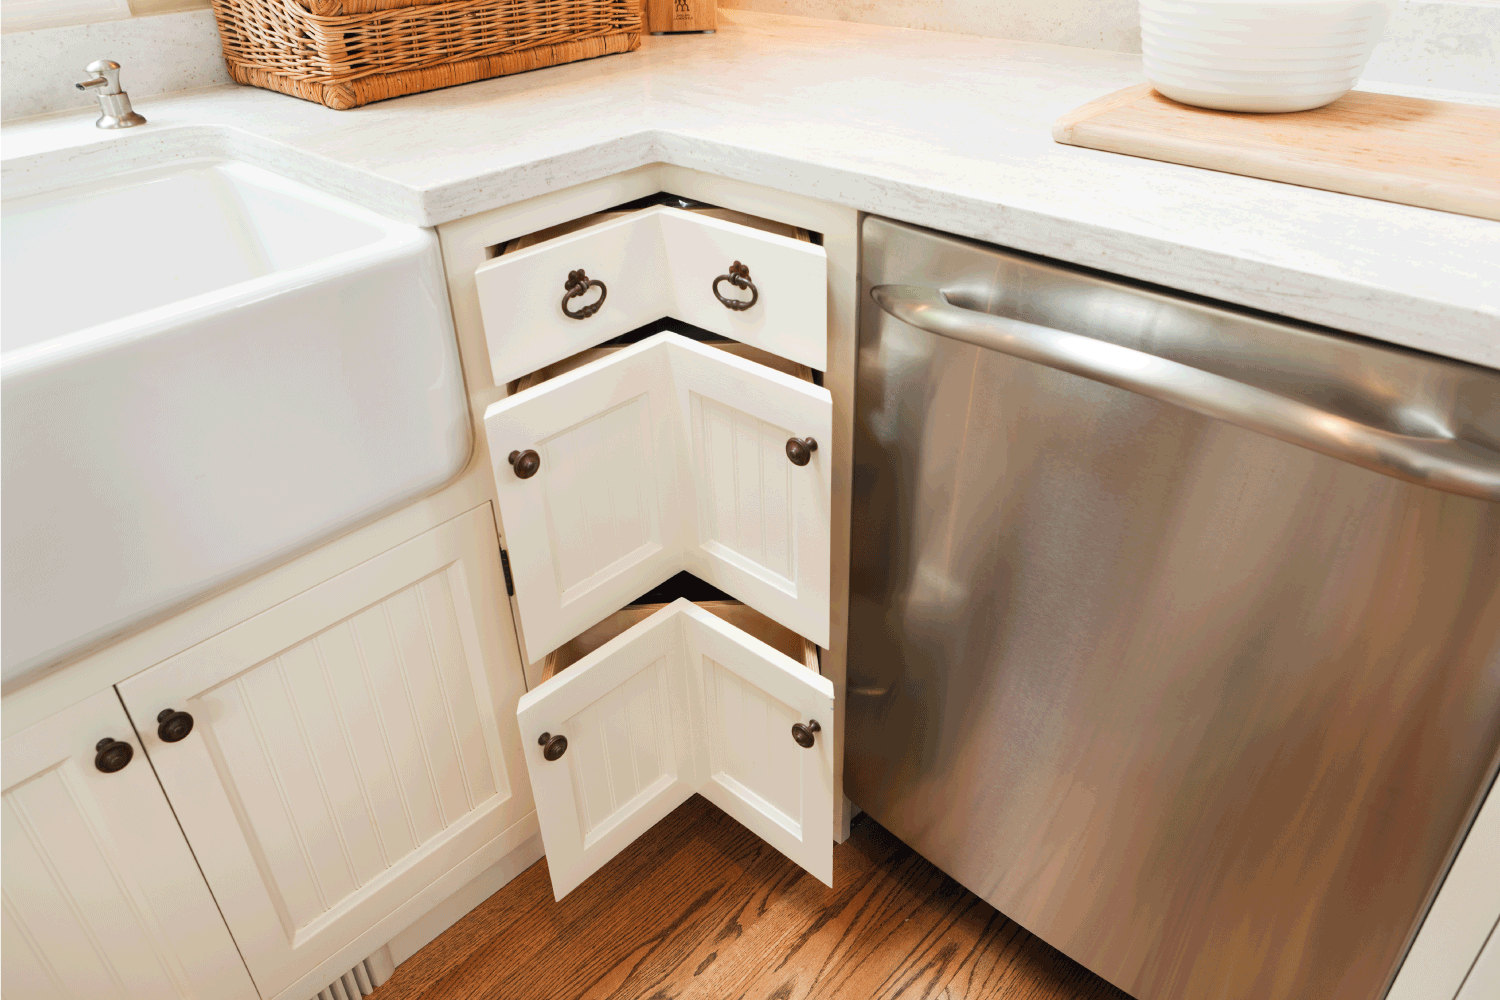 Modern kitchen design details, featuring efficient corner drawer units in kitchen cabinetry